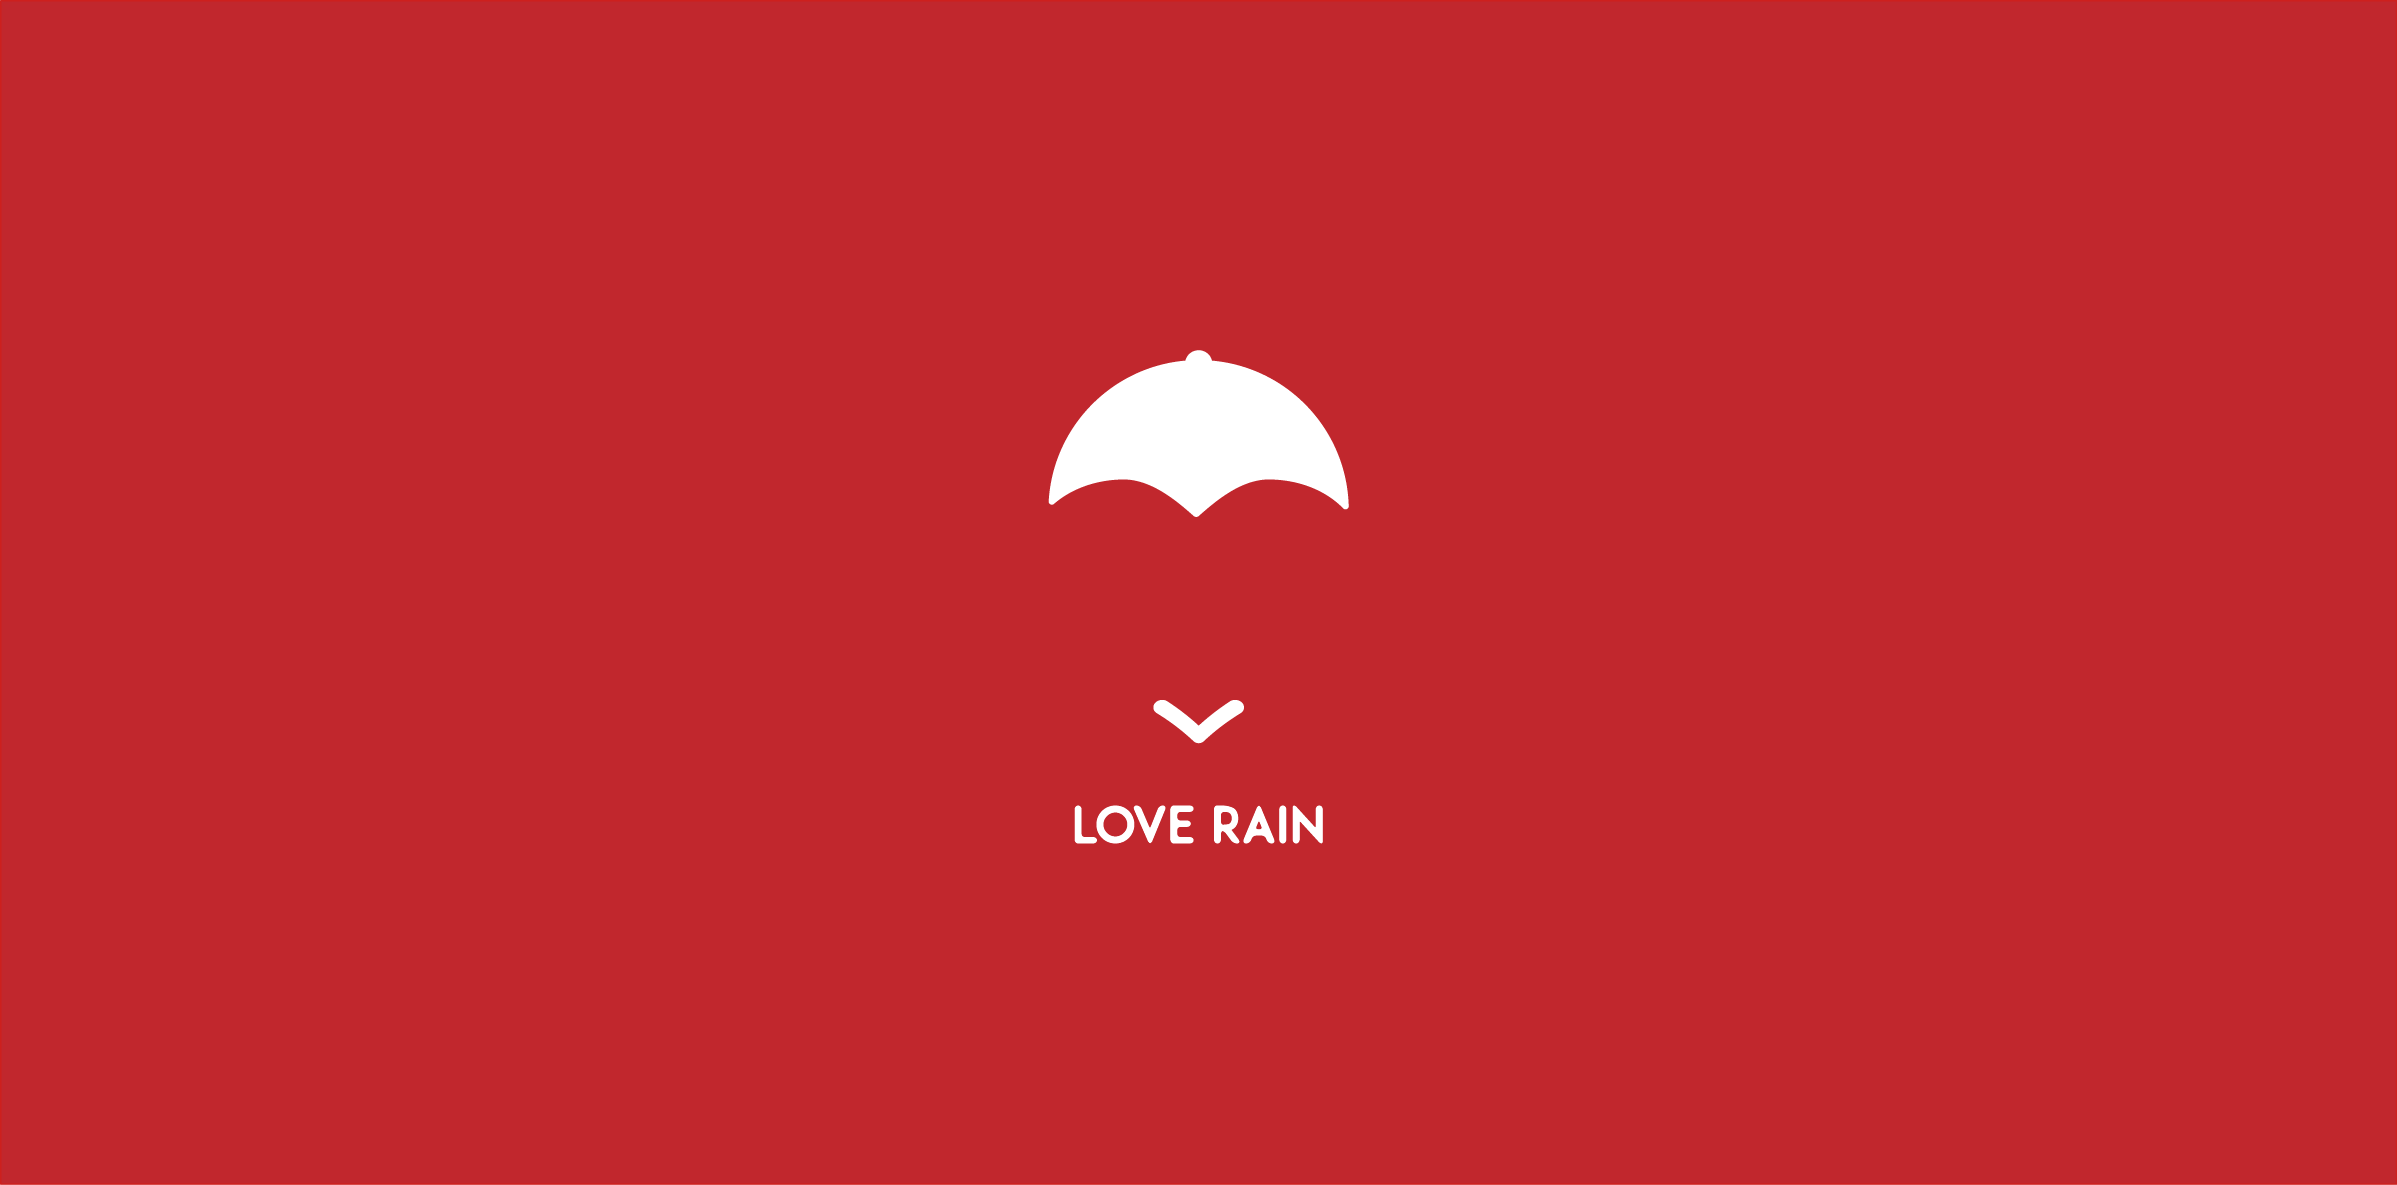 RAIN LOVER